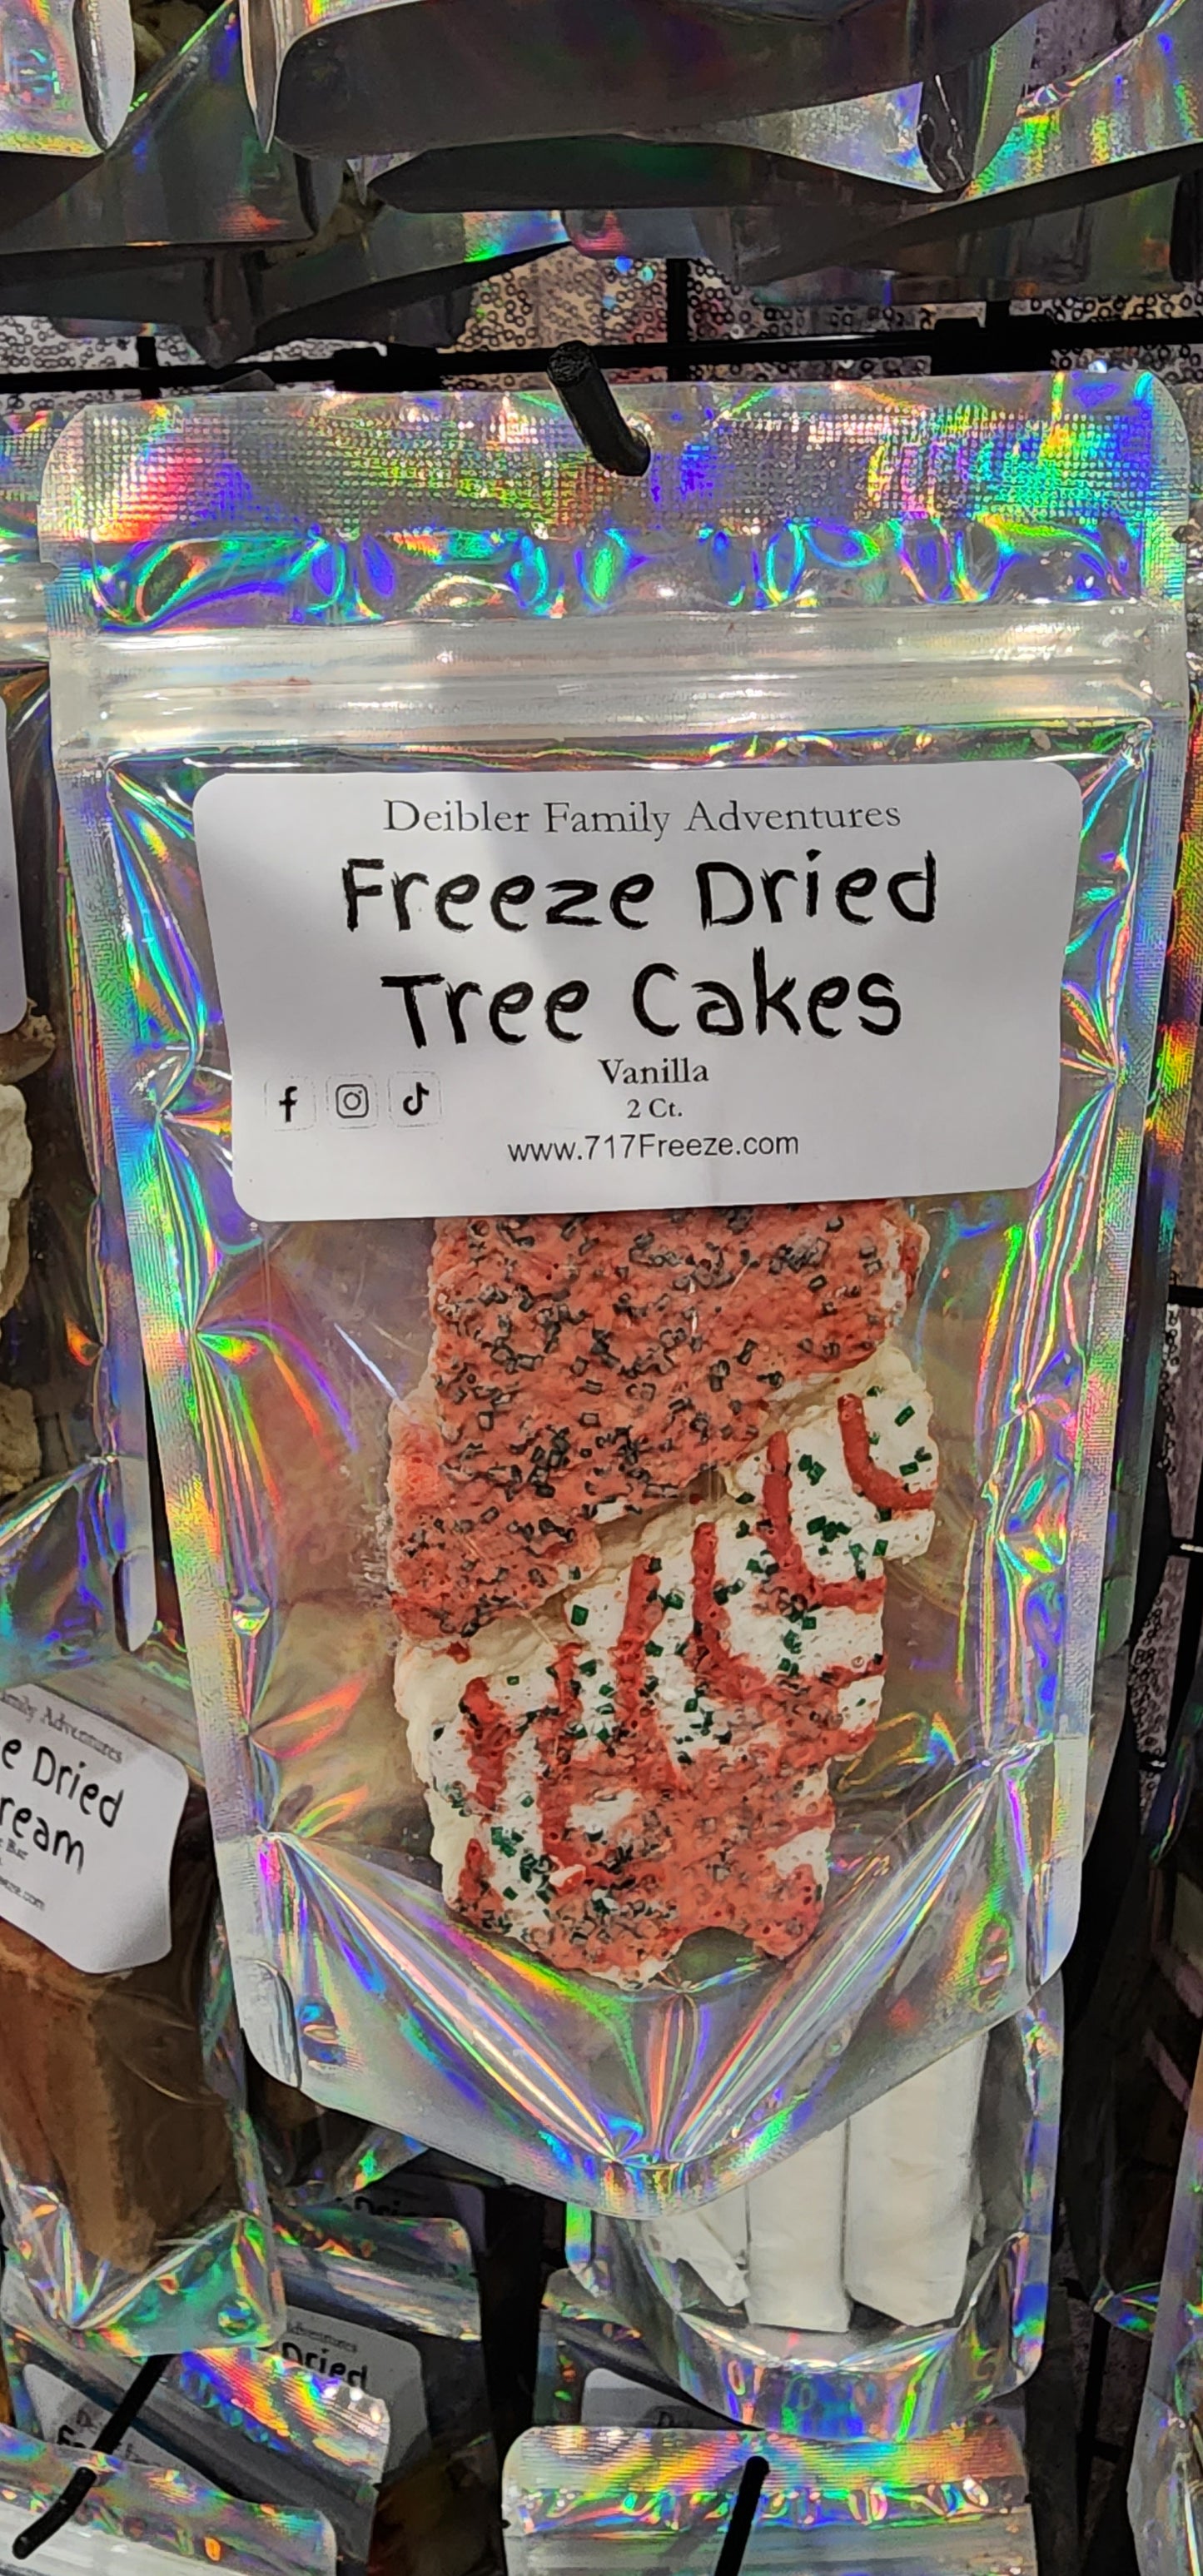 Christmas Tree cakes